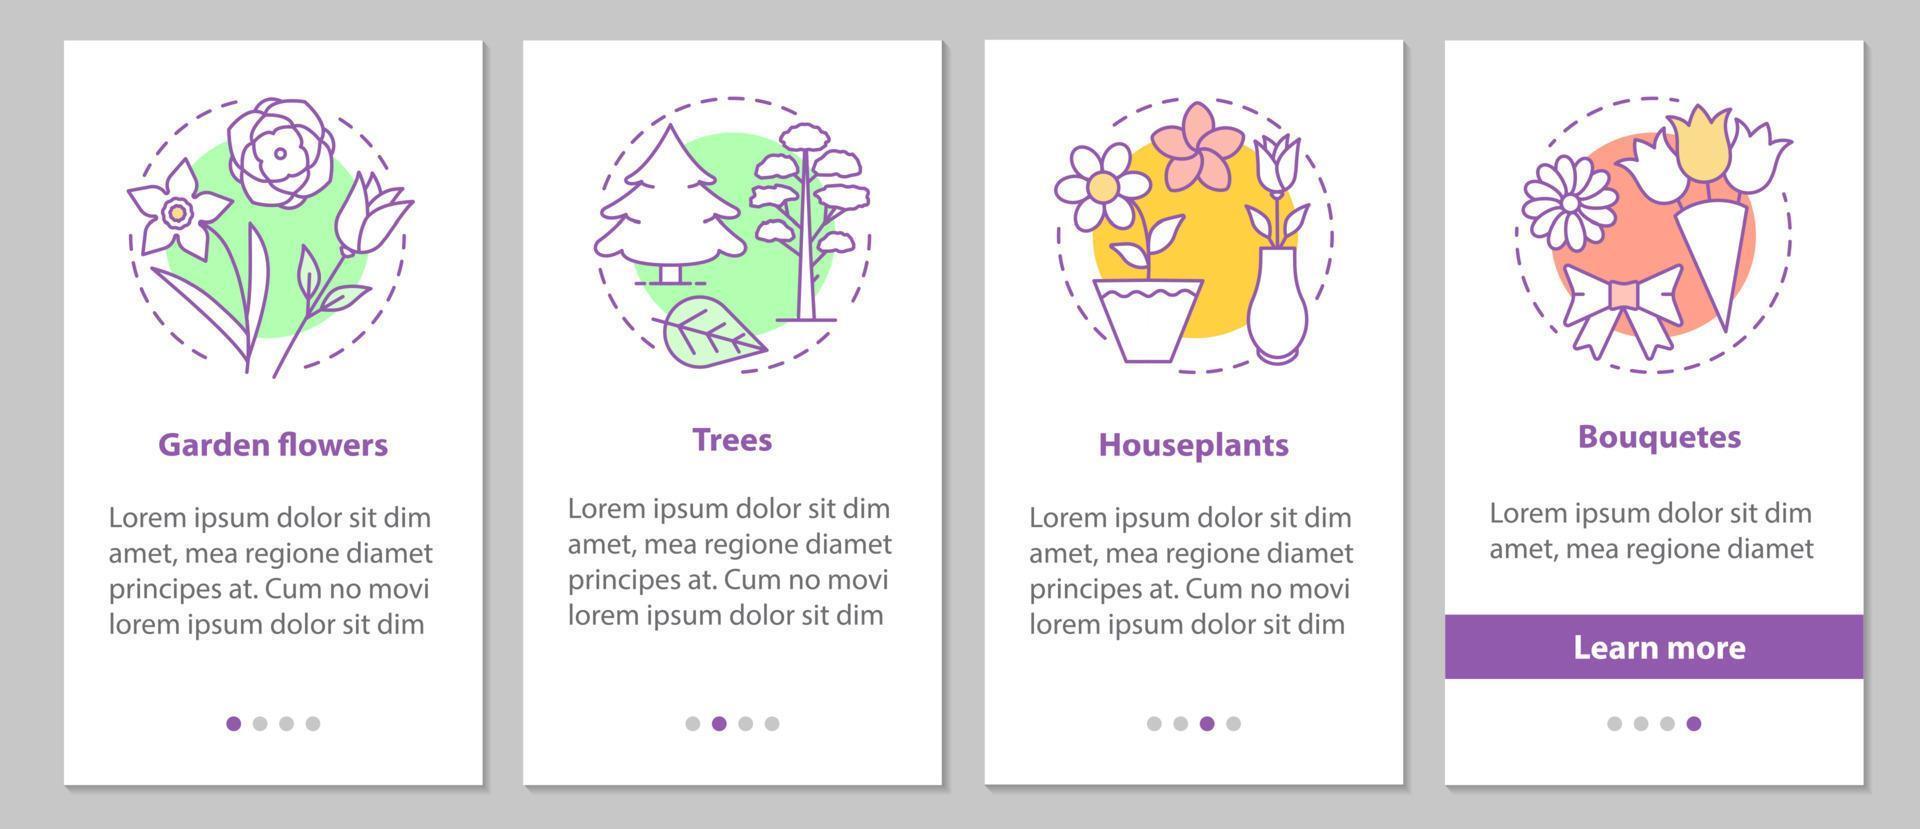 Pflanzen Onboarding mobiler App-Seitenbildschirm mit linearen Konzepten. Gartenblumen, Bäume, Zimmerpflanzen, Blumensträuße Schritte grafische Anweisungen. ux, ui, gui Vektorvorlage mit Illustrationen vektor